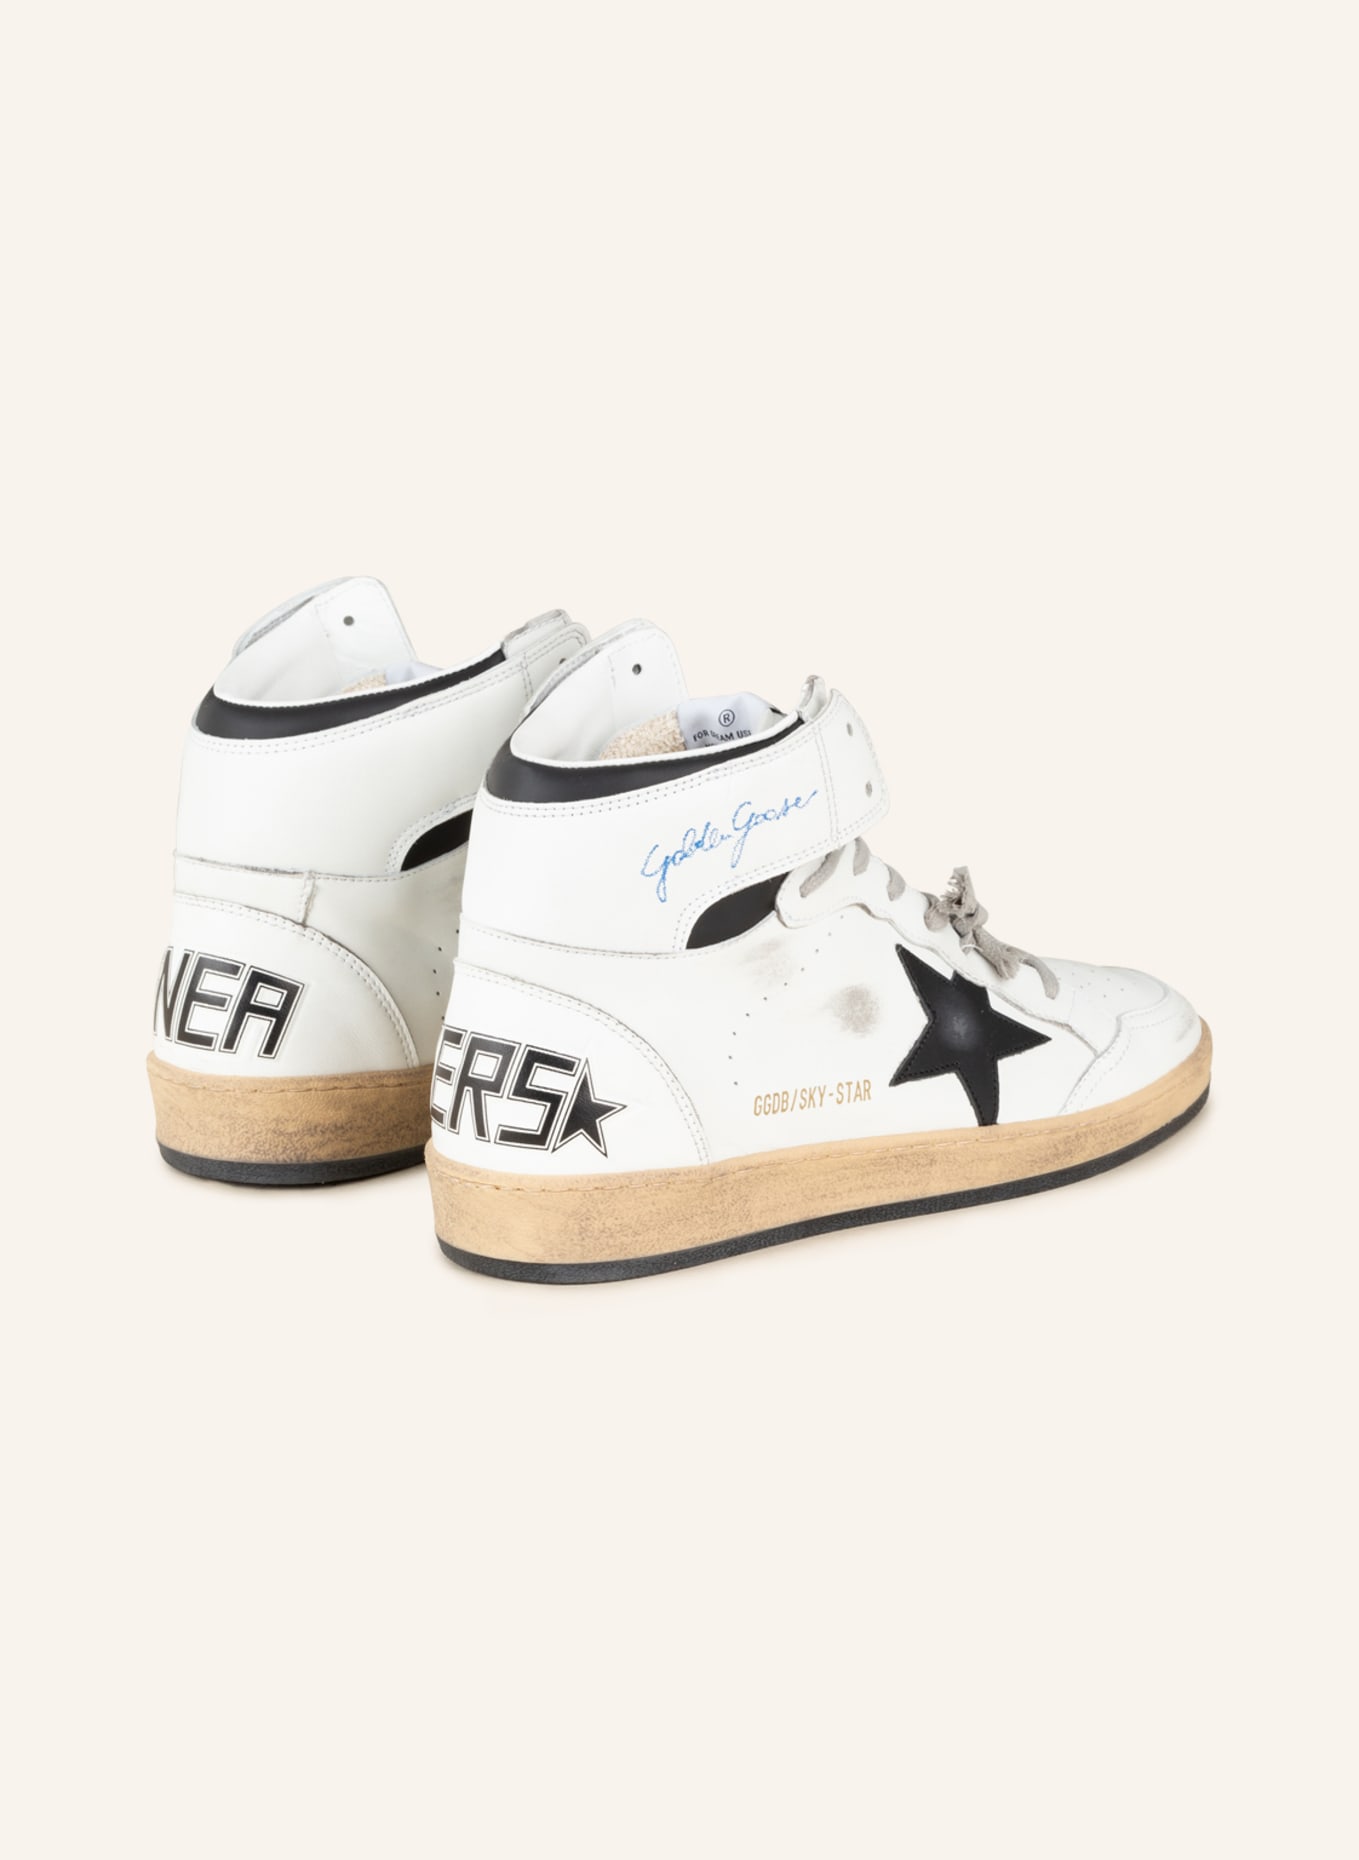 GOLDEN GOOSE Hightop-Sneaker SKY-STAR, Farbe: WEISS/ SCHWARZ (Bild 2)